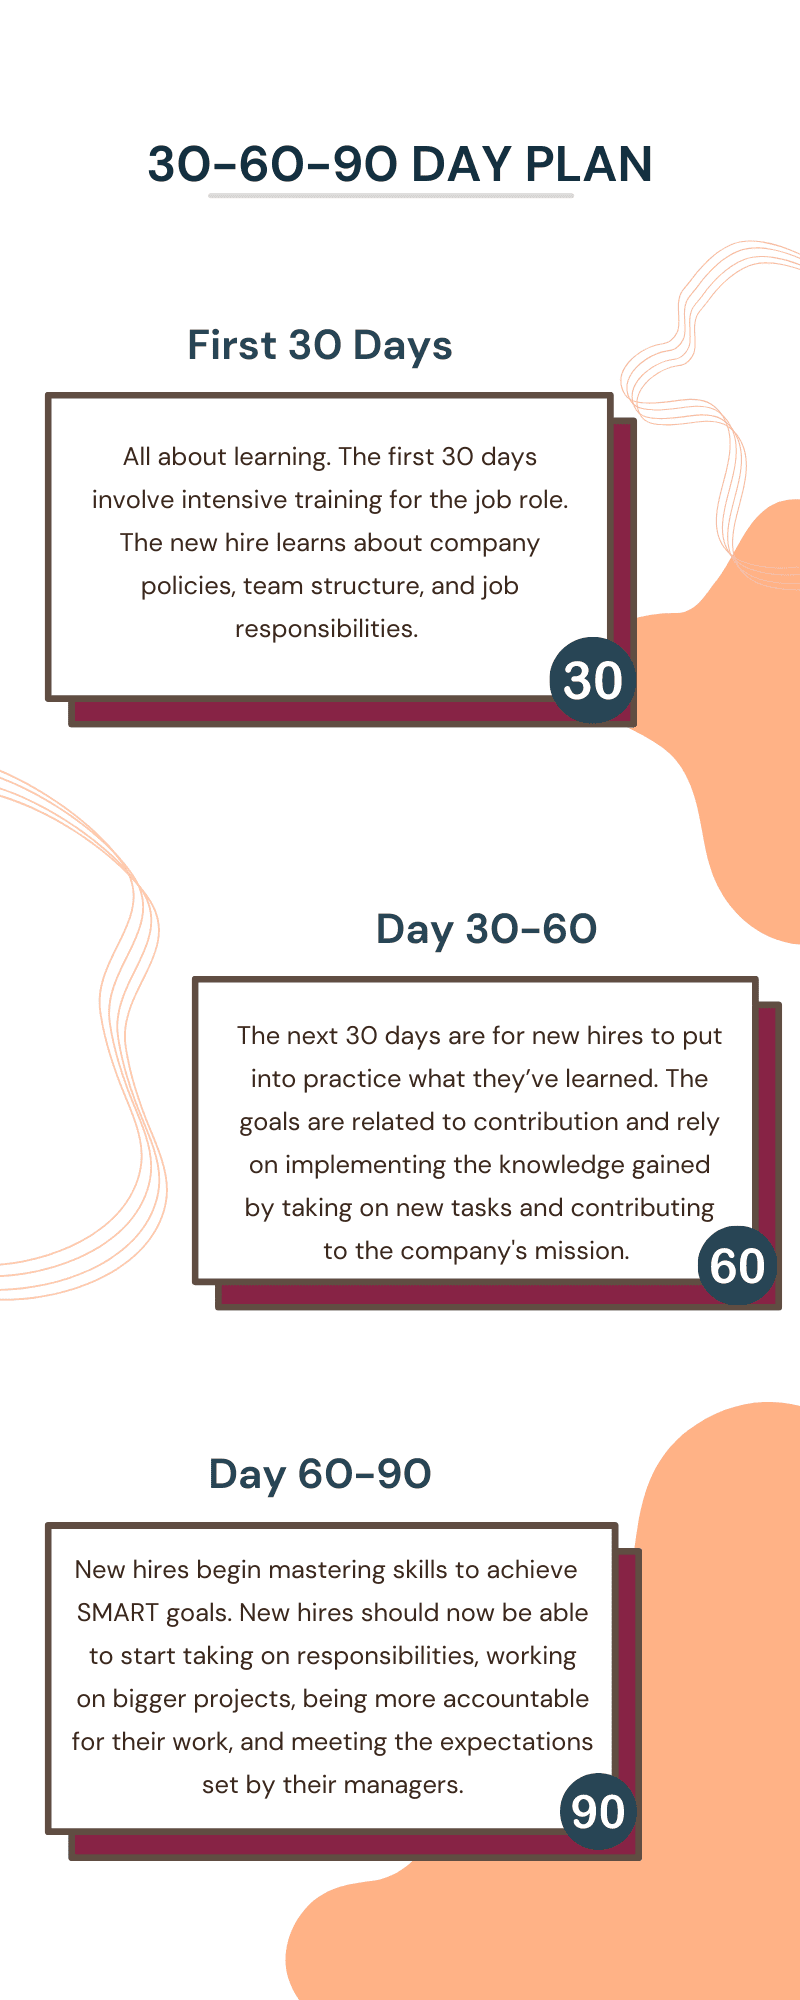 30-60-90 Day Plan